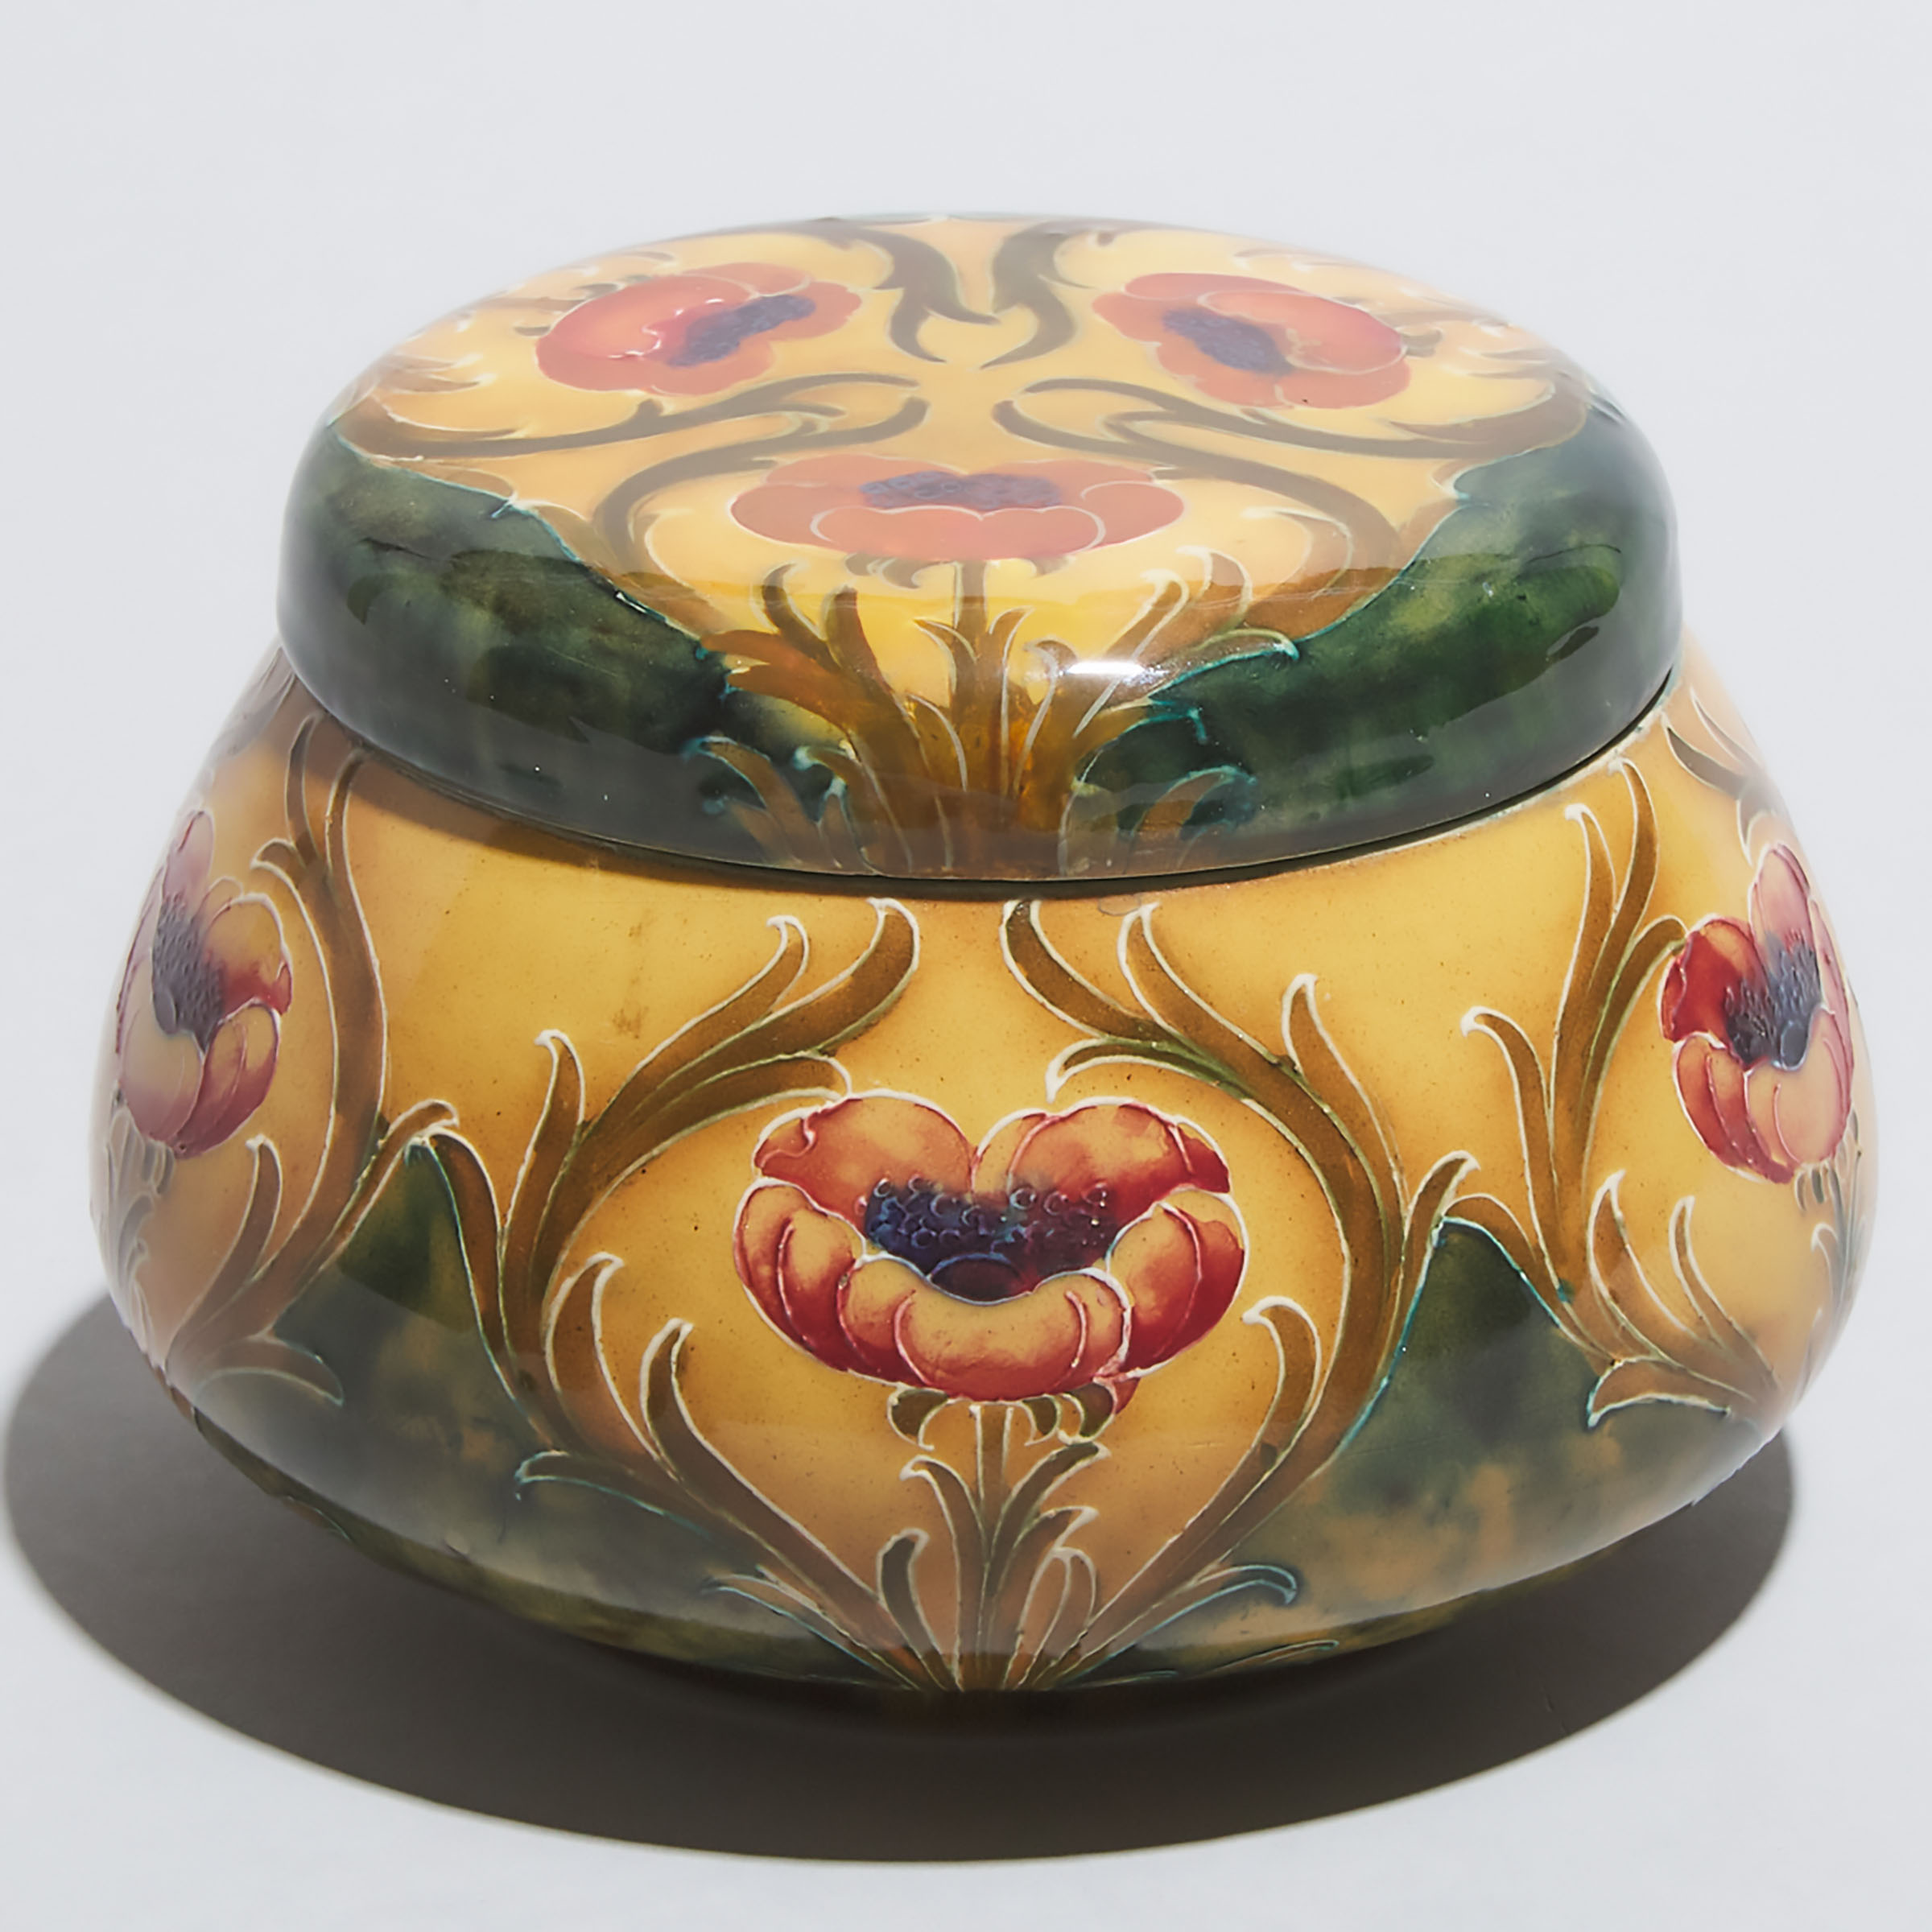 Macintyre Moorcroft Florian Poppy Covered Jar, c.1905